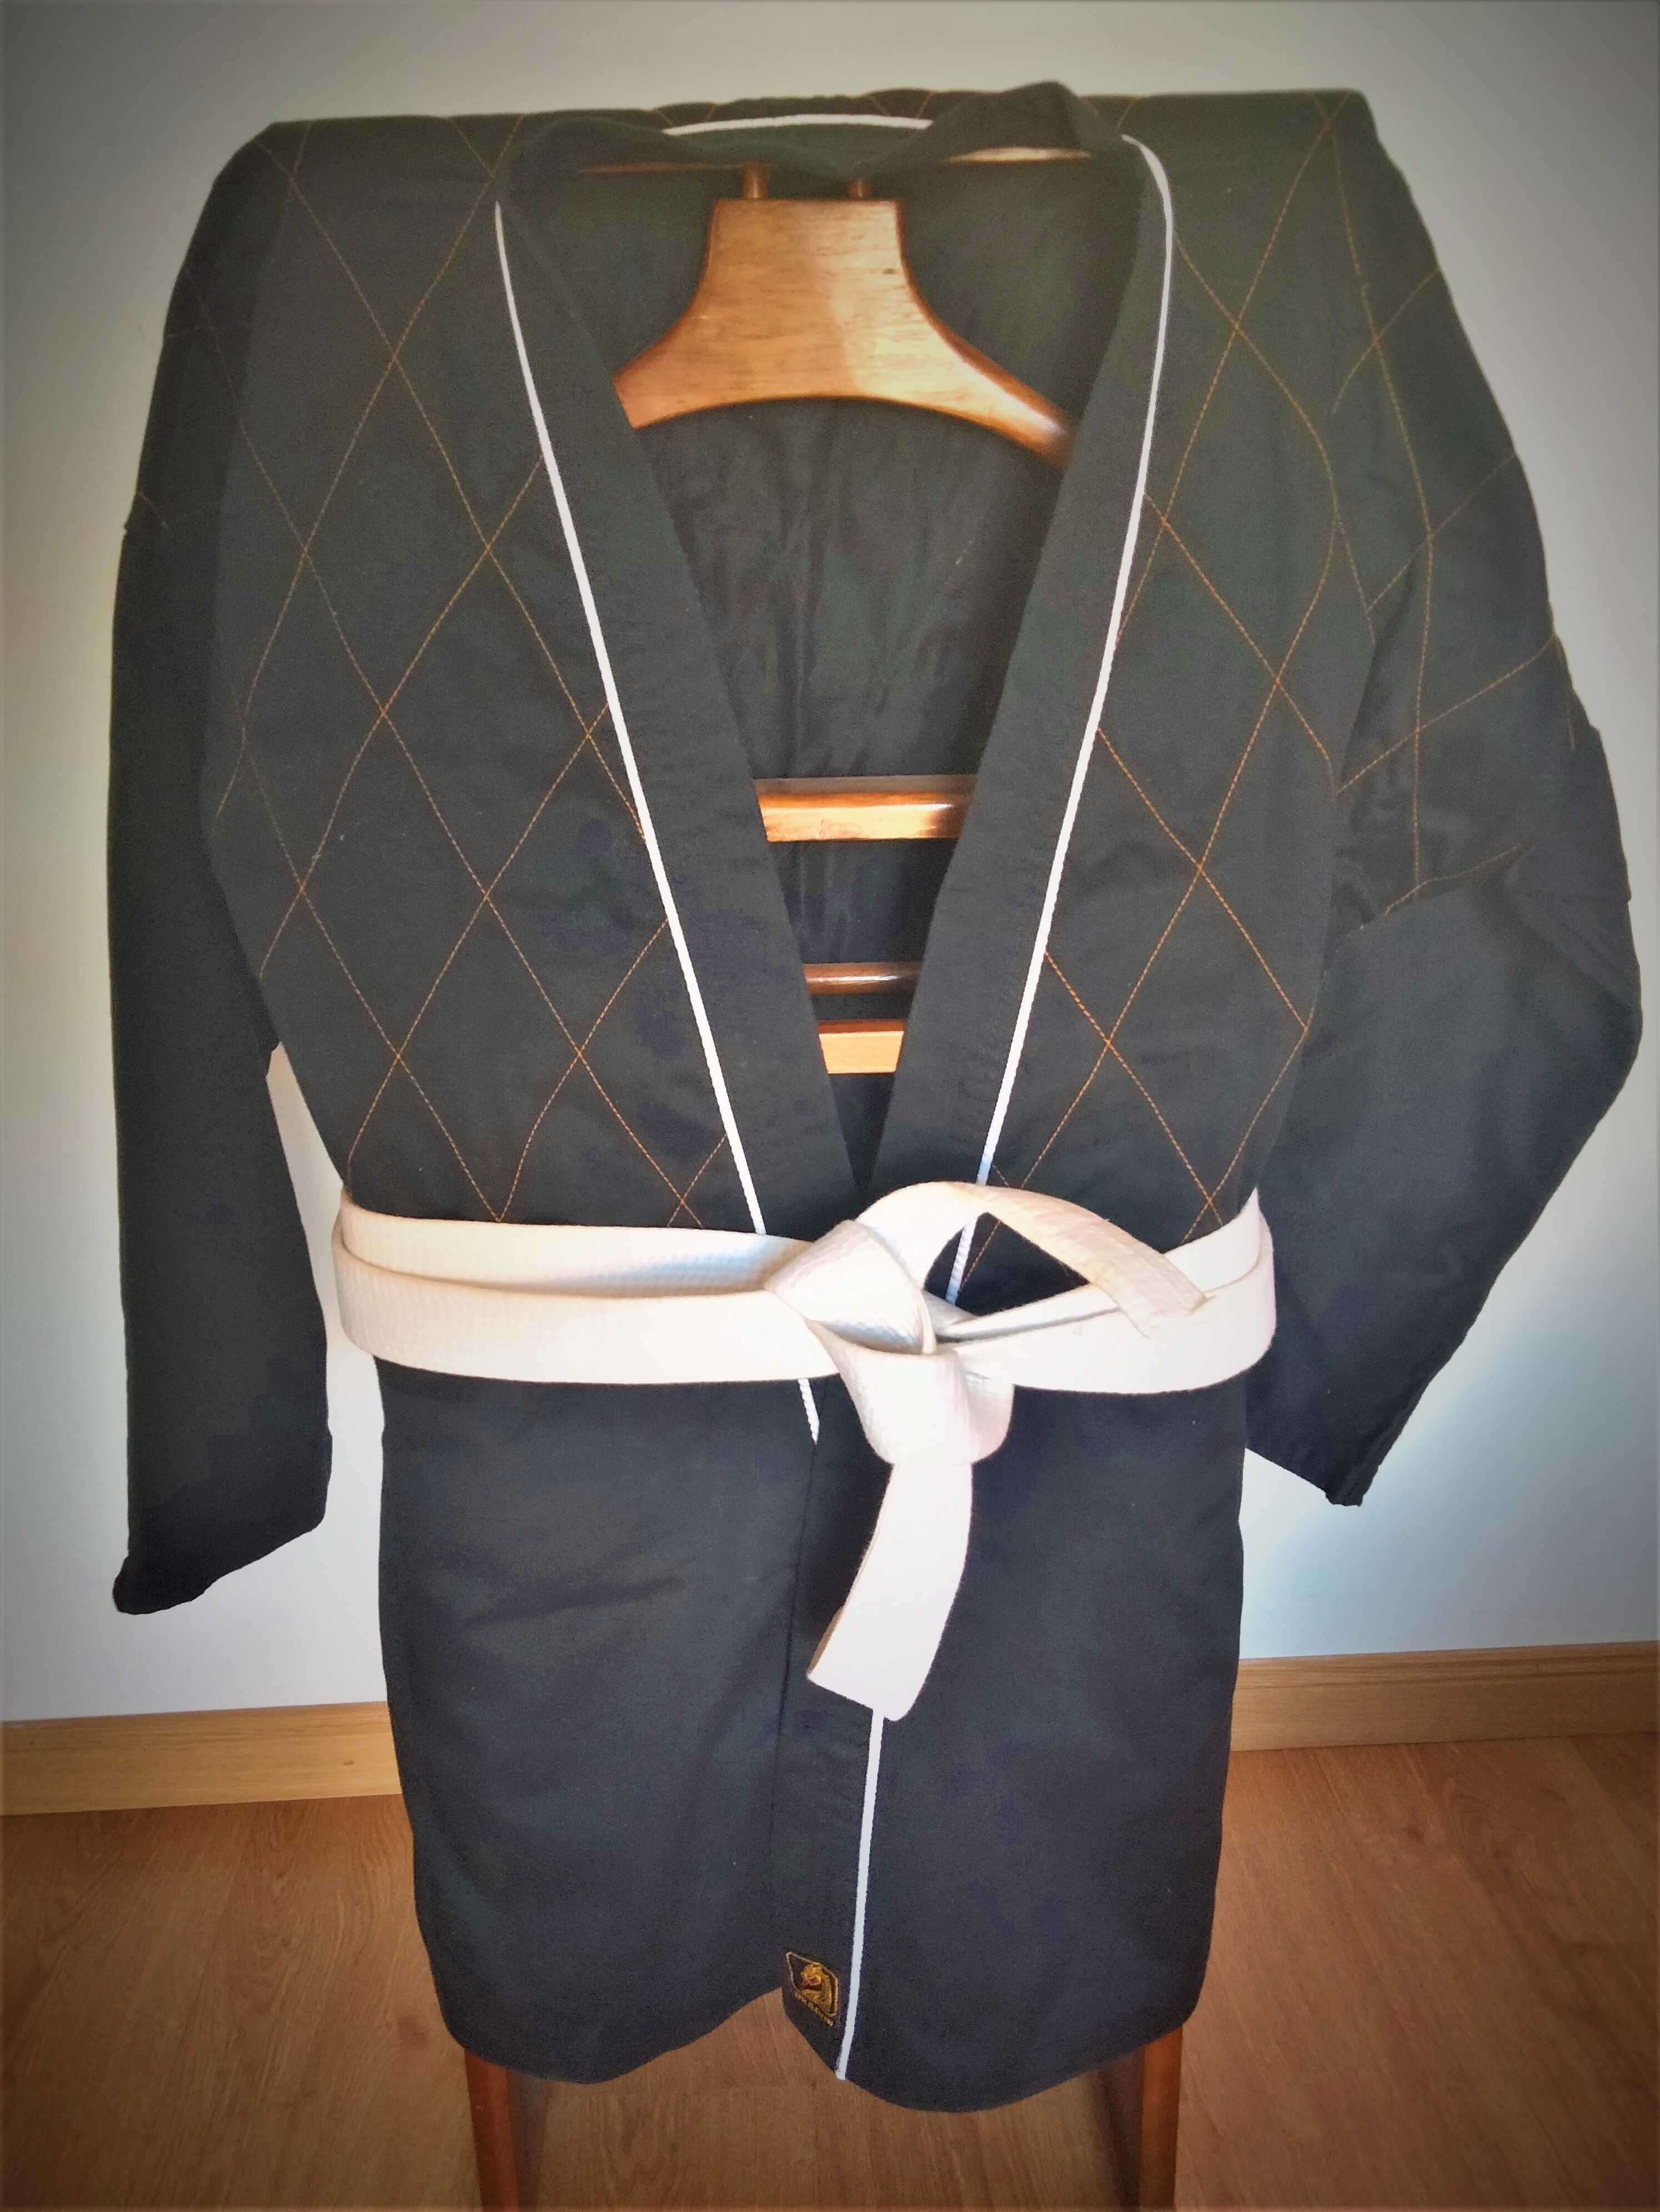 Fato Hapkido dobok  /  Jiu Jitsu kimono